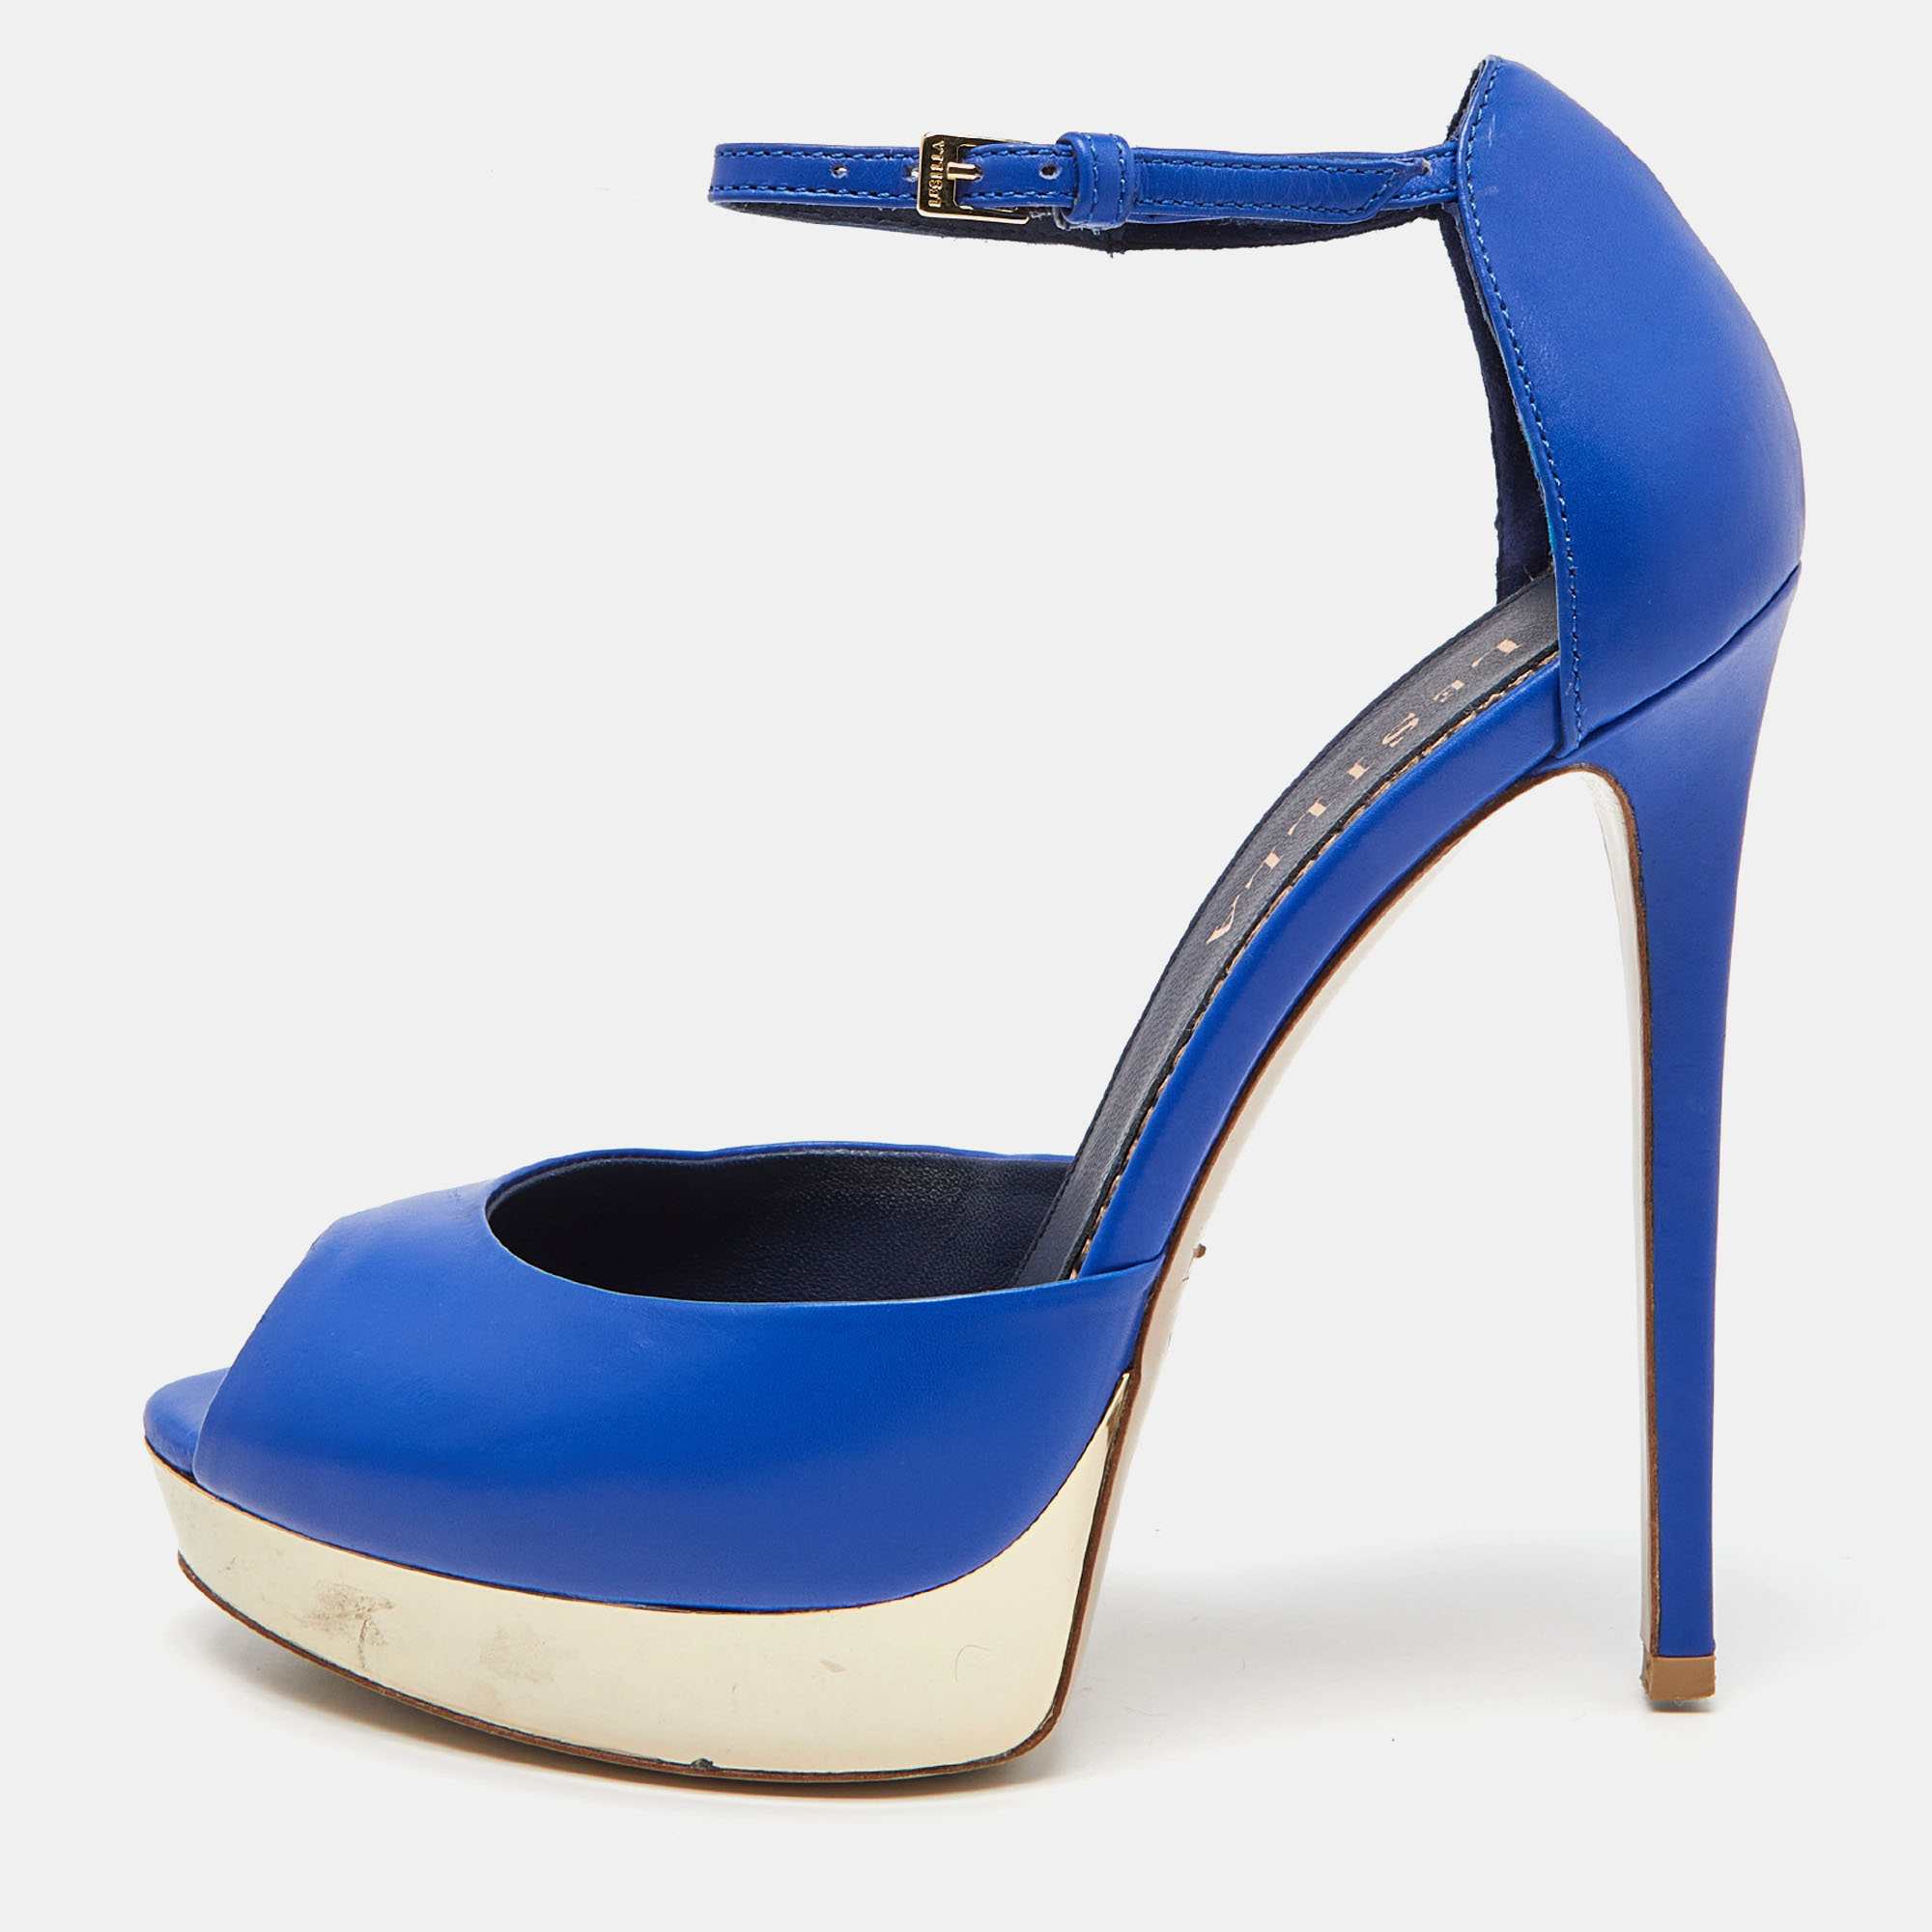 Le Silla Blue Leather Peep Toe Platform Ankle Strap Sandals Size 37.5